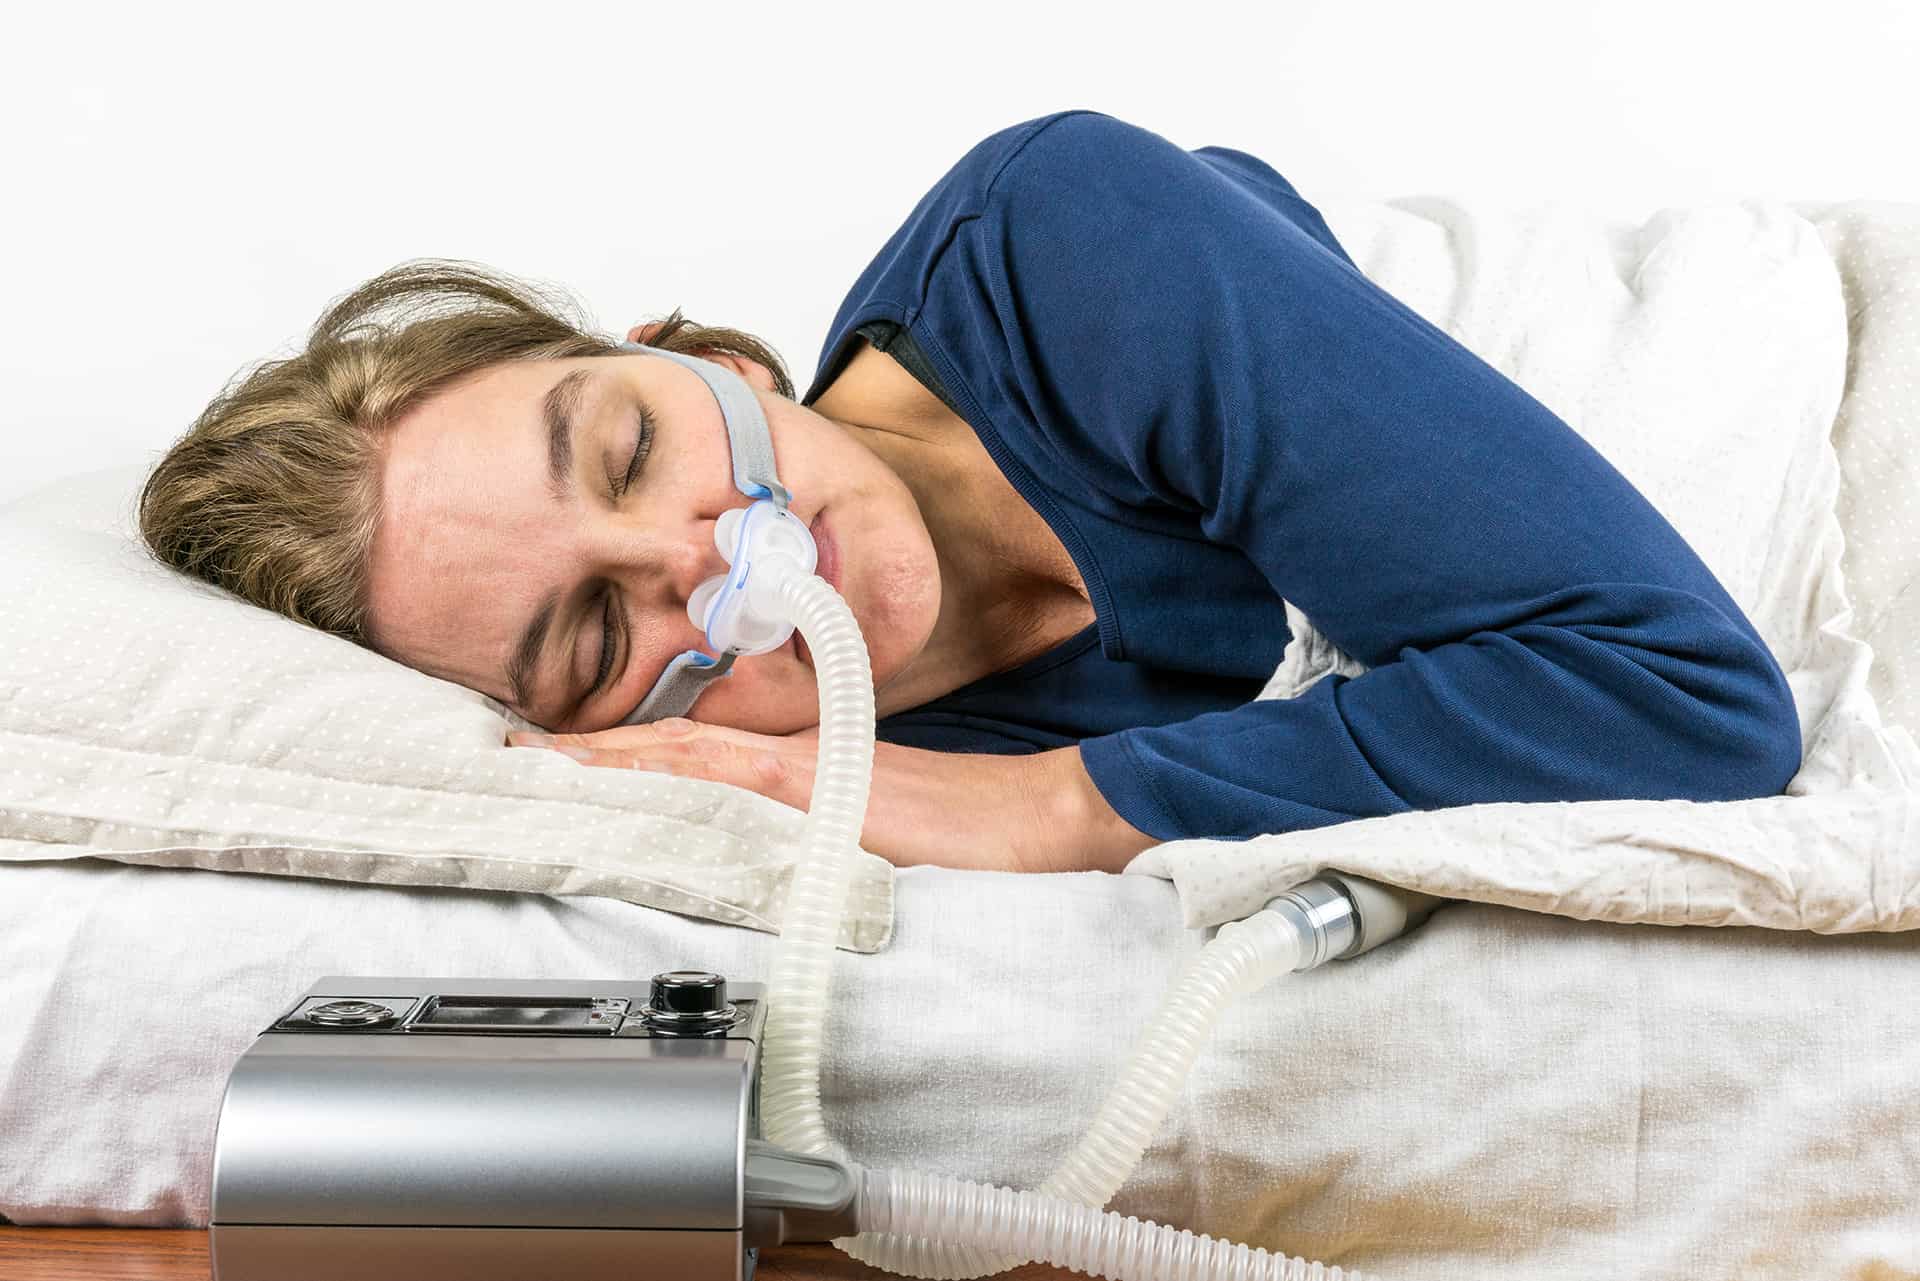 Does Sleep Apnea Affect Women?